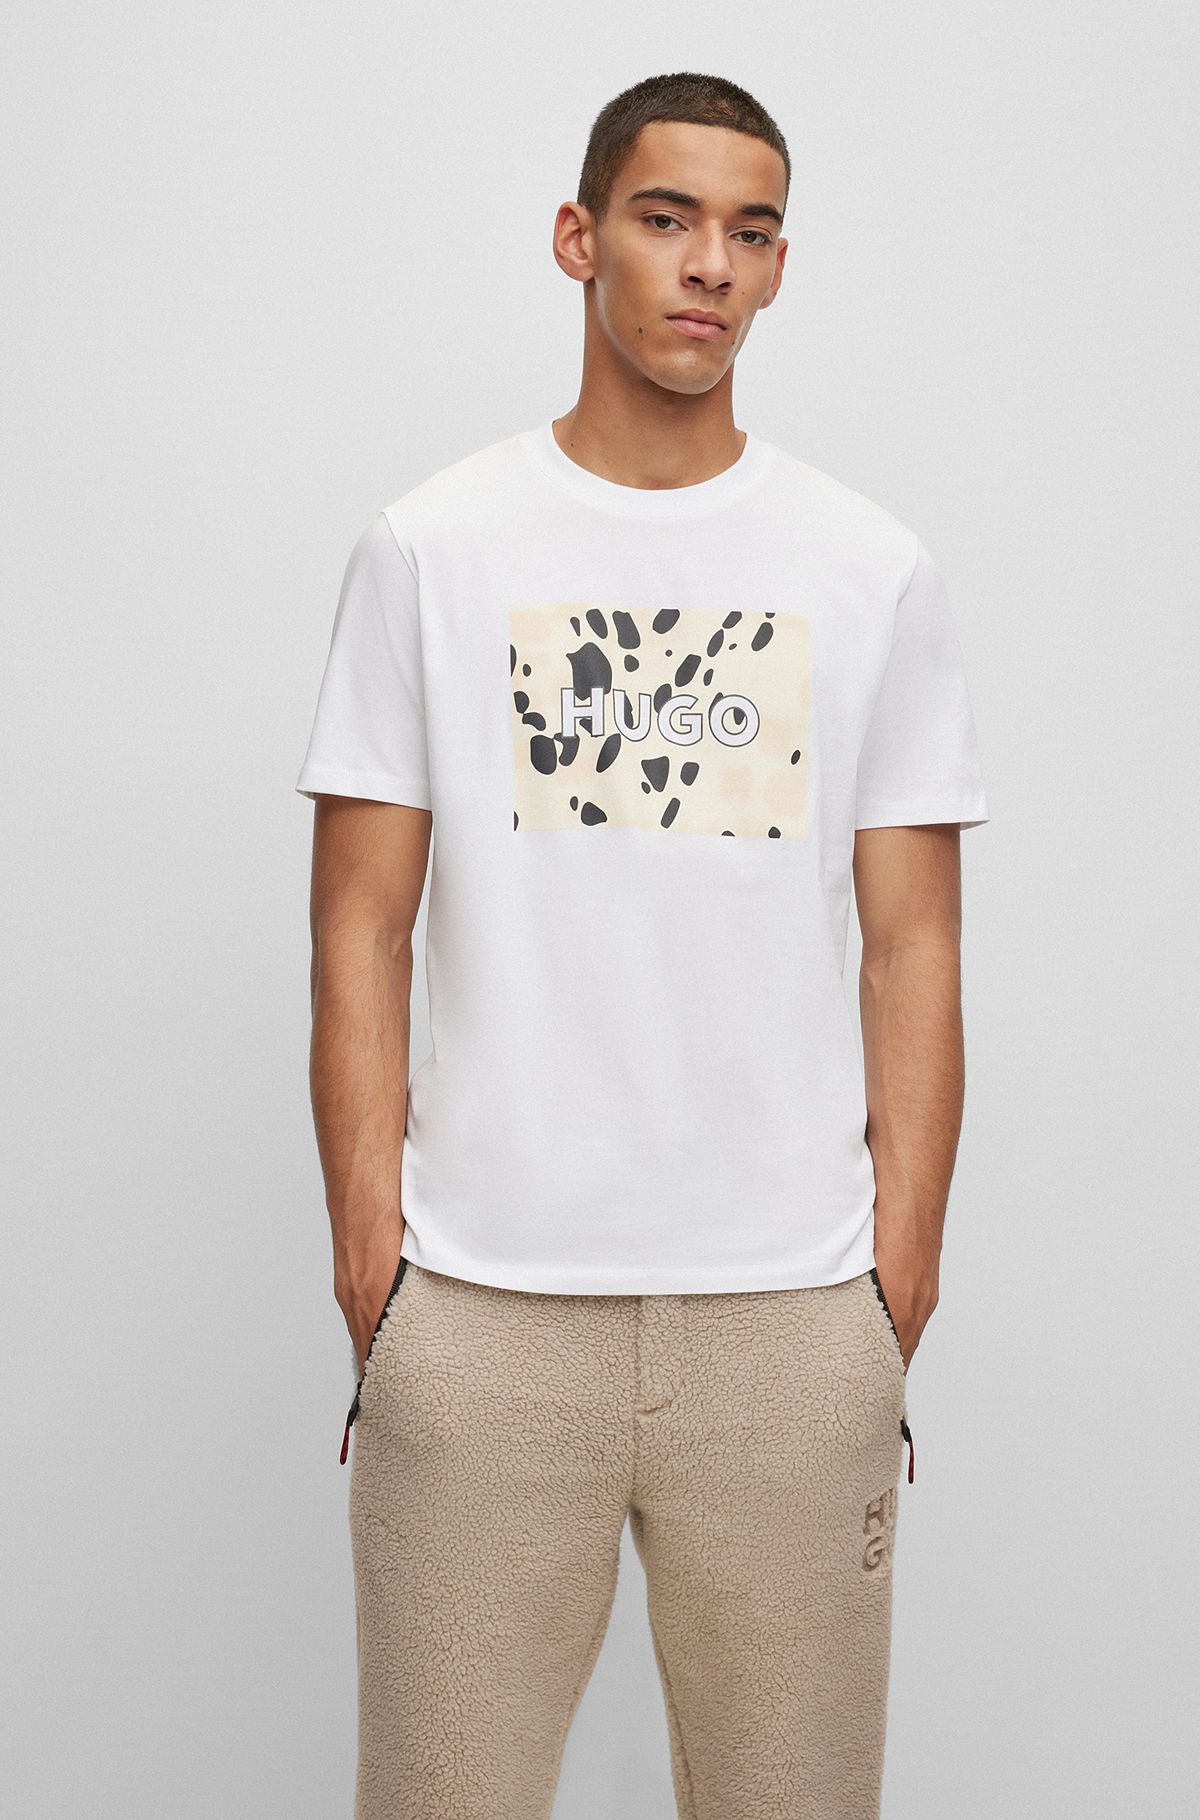 Cotton-jersey T-shirt with Dalmatian-print logo artwork, White